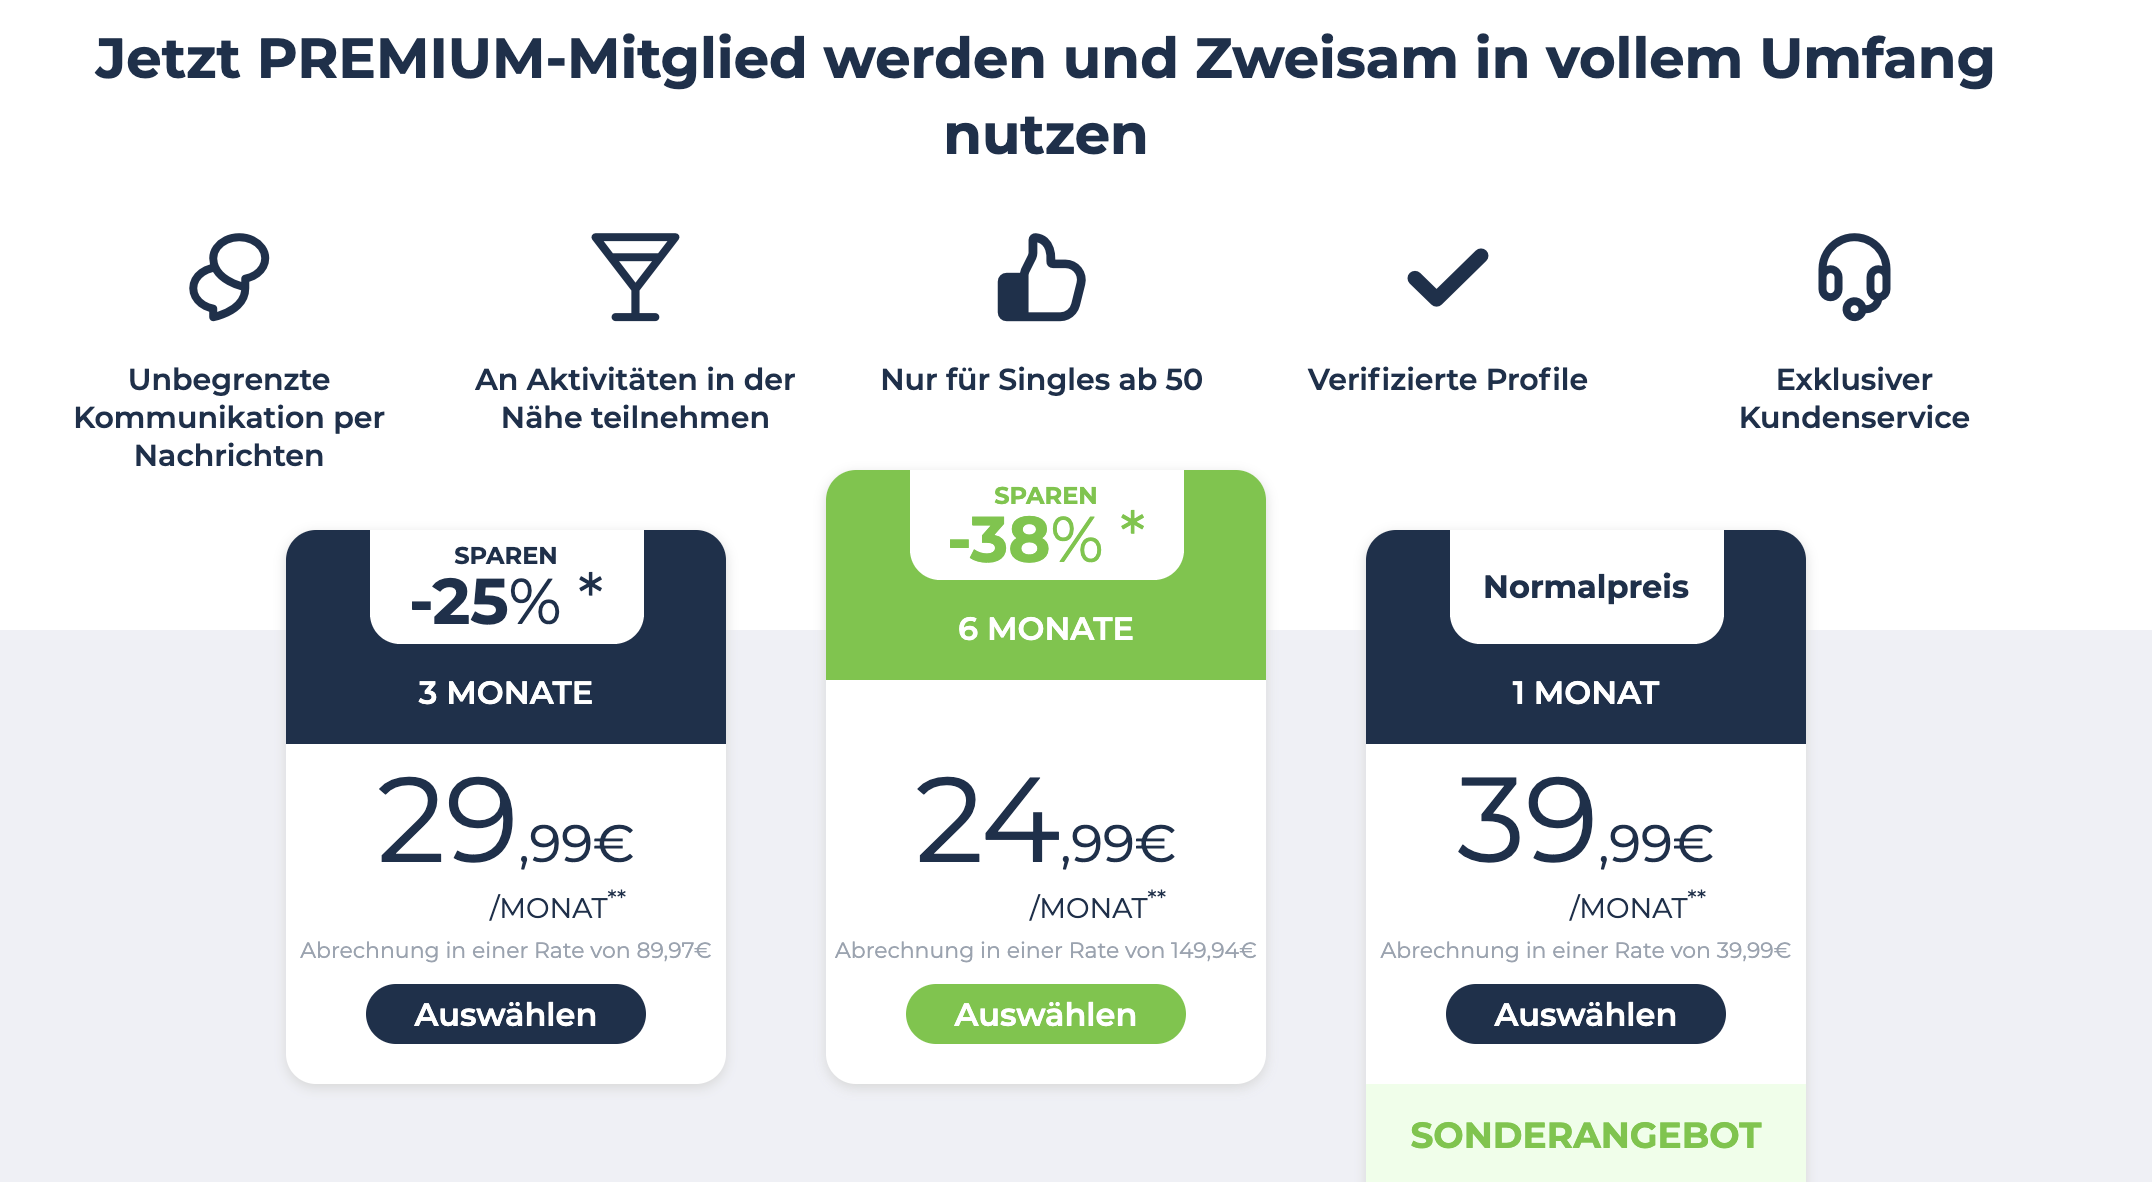 Zweisam.de: Neues Online-Datingportal für die Generation 50Plus